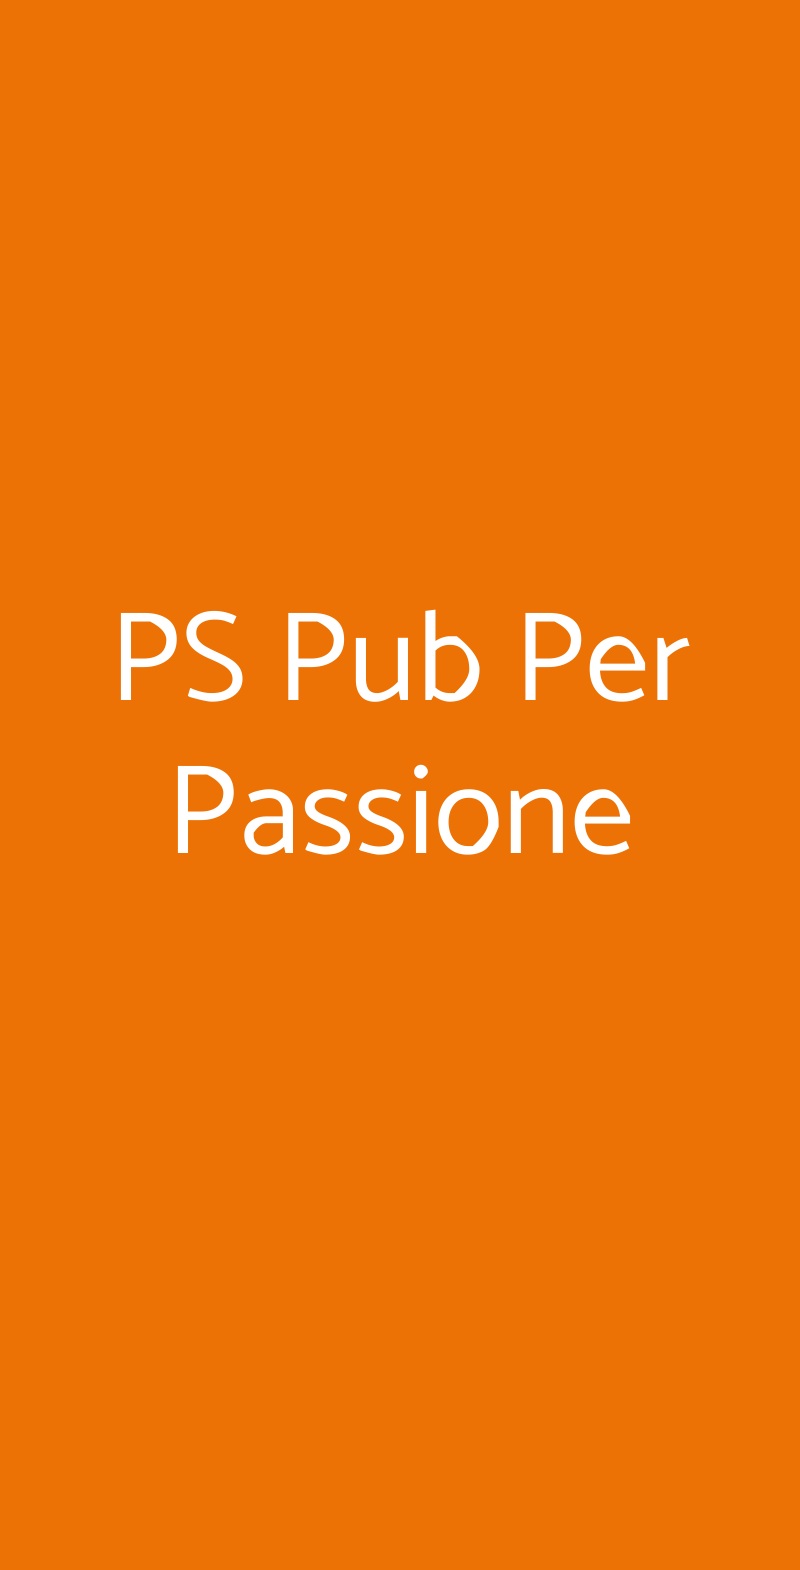 PS Pub Per Passione San Giorgio delle Pertiche menù 1 pagina